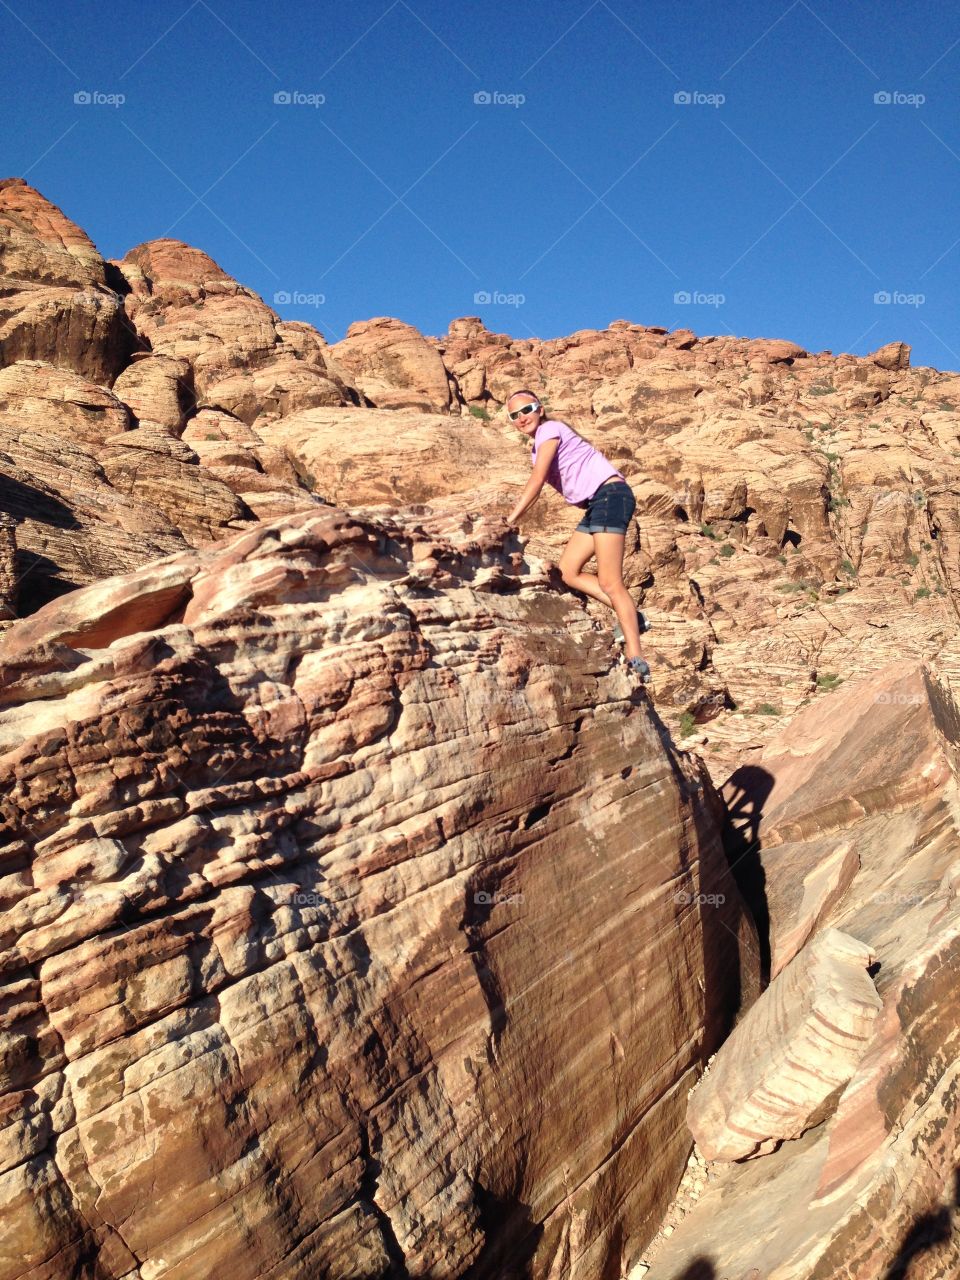 Rock Climbing. Rock Climbing Red Rock Canyon